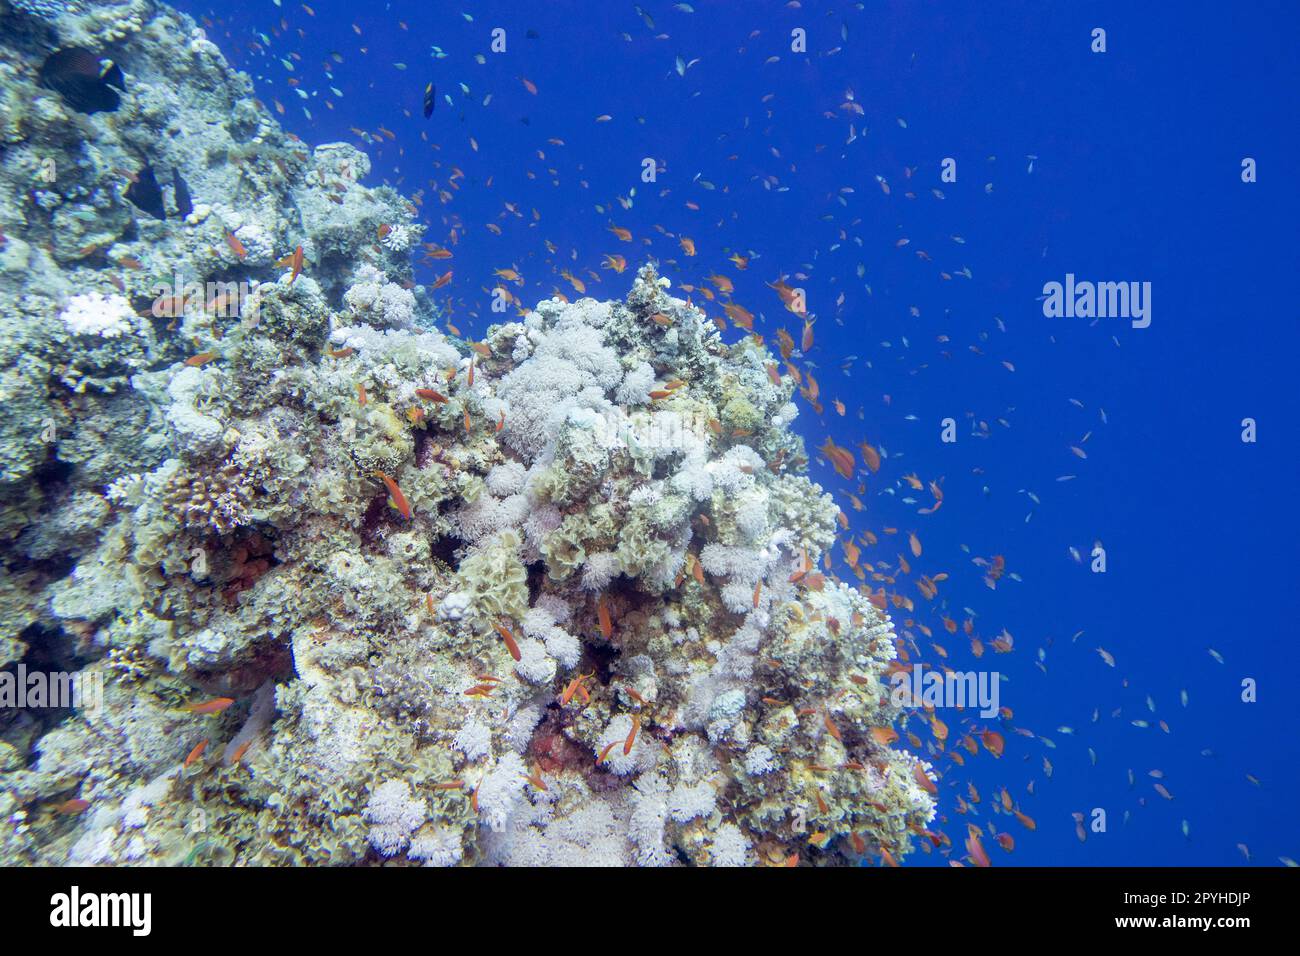 Farbenfrohe, malerische Korallenriffe am Grund des tropischen Meeres, harte und weiche Korallen, Fische aus Anthias, Unterwasserlandschaft Stockfoto